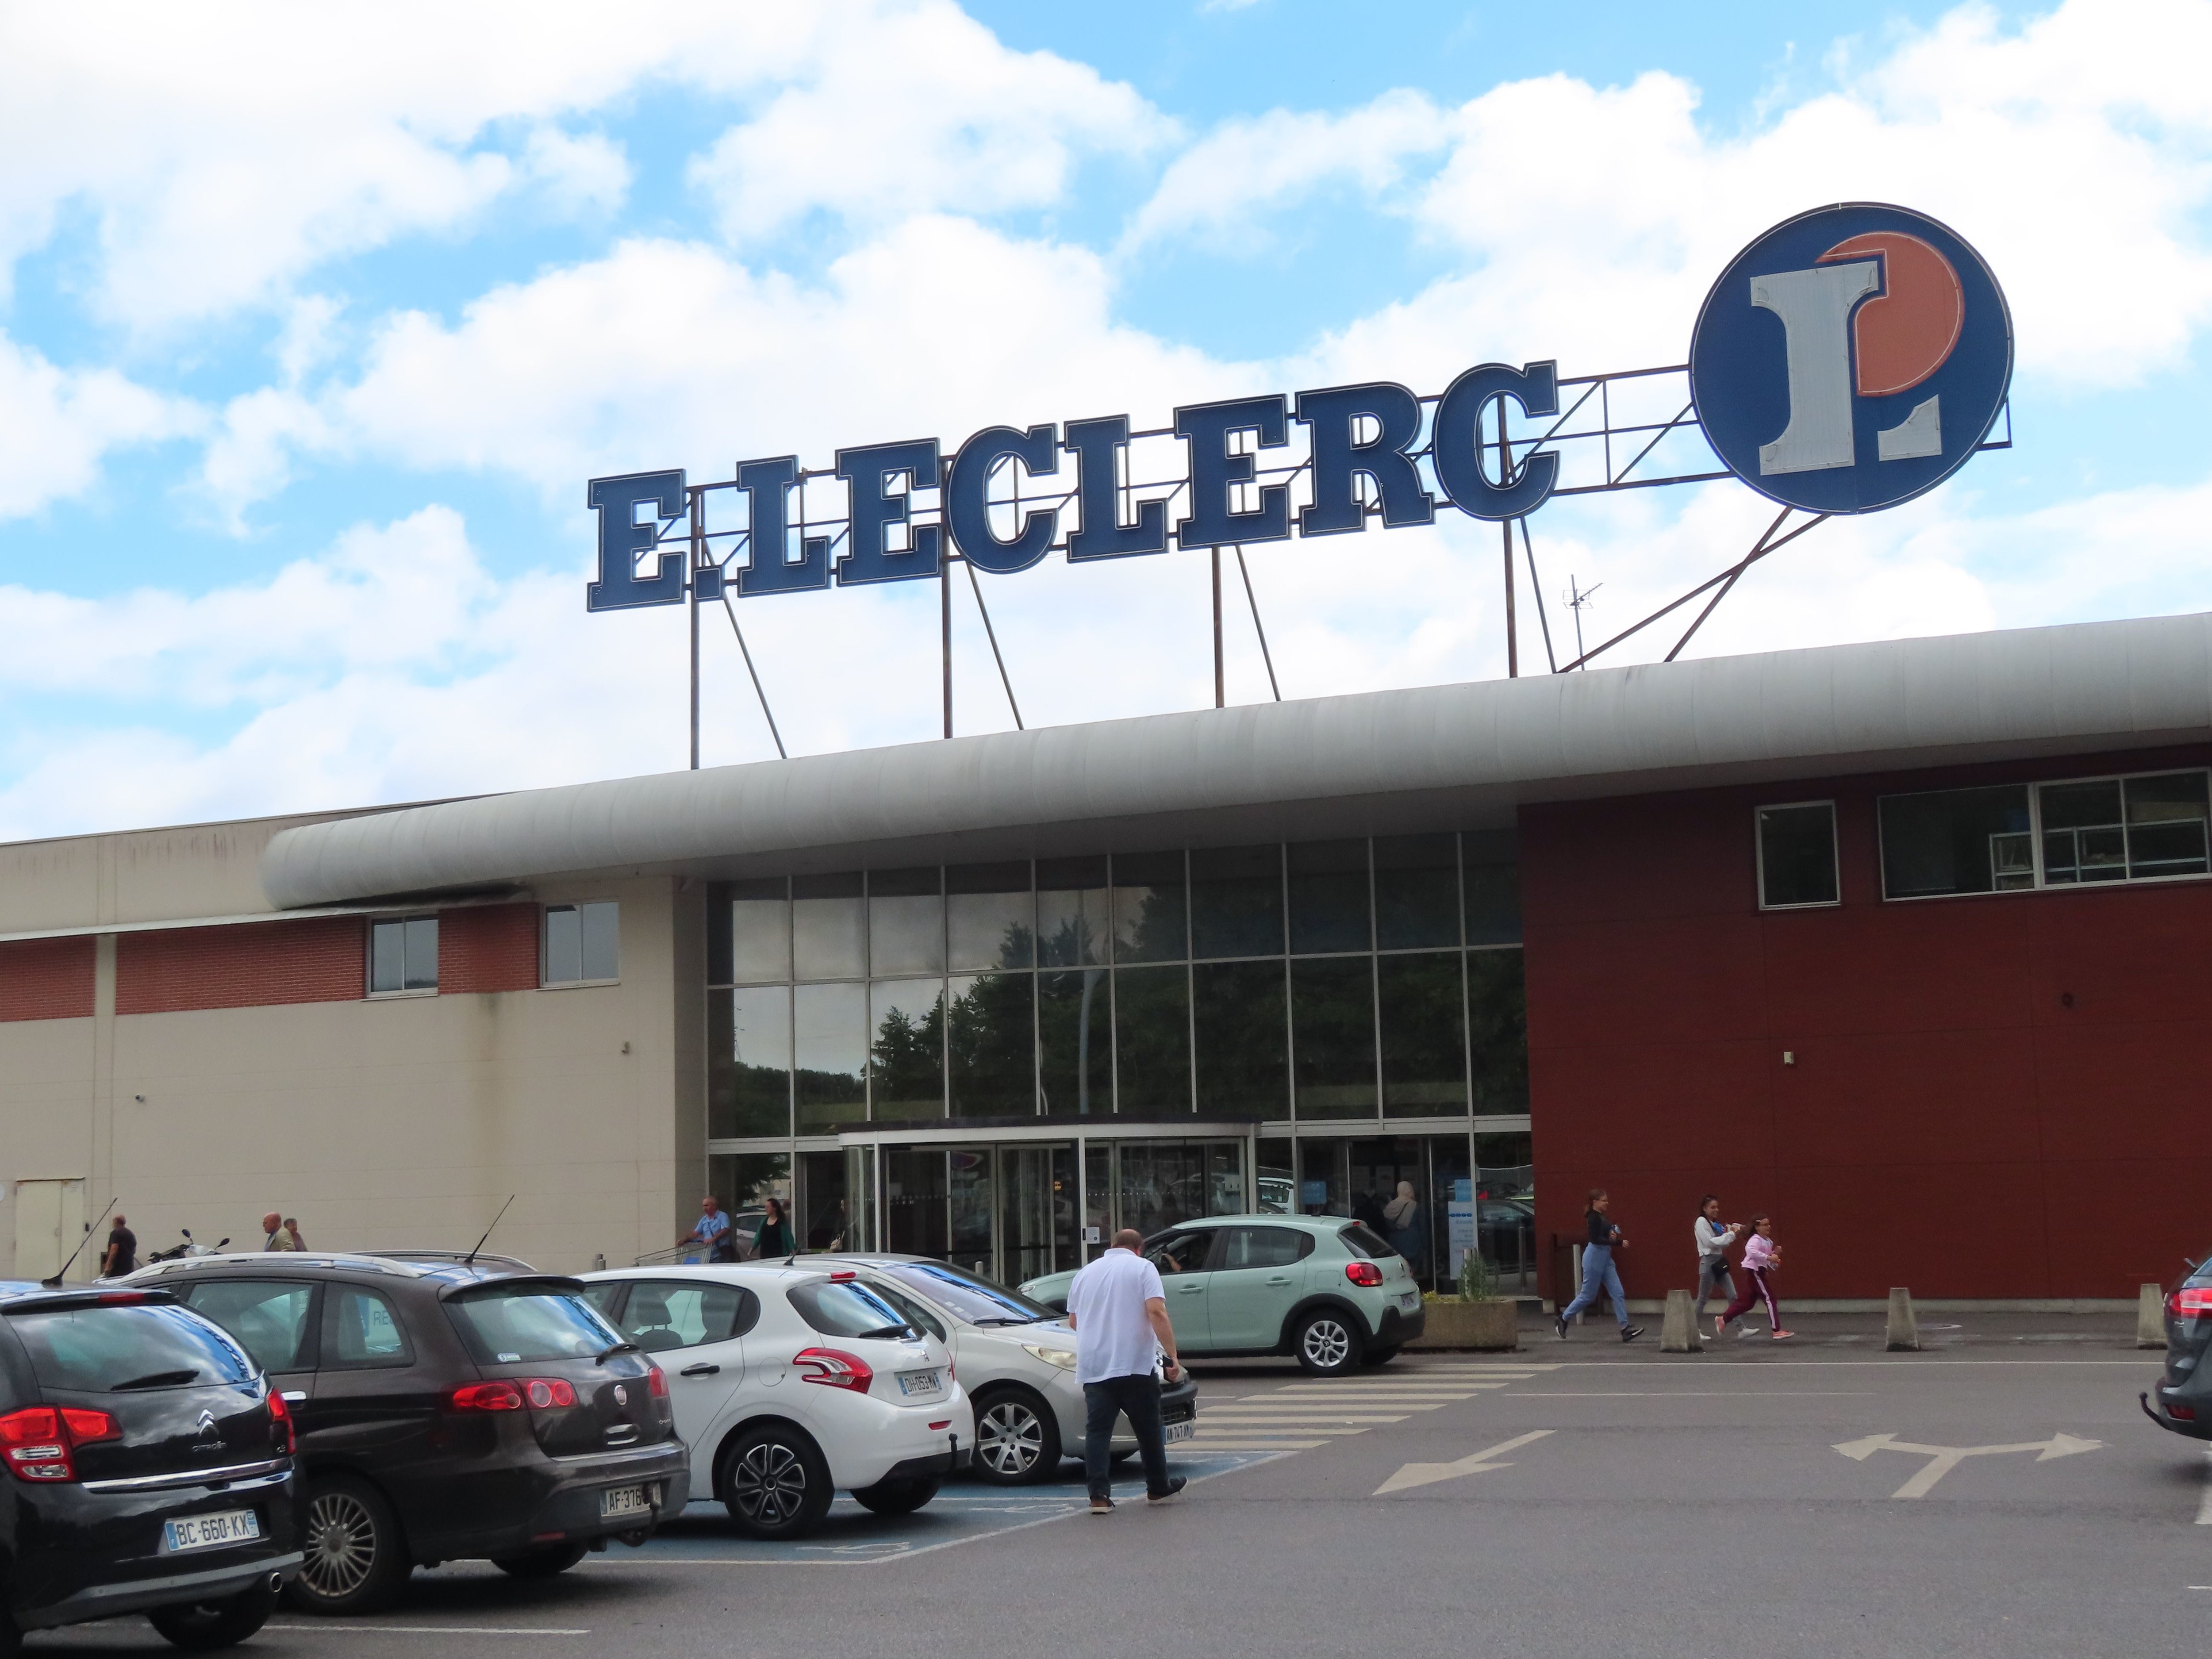 En septembre, les deux supermarchés Leclerc de Saint-Just-en-Chaussée et de Breteuil et de  avaient été victimes de vols, dont un à main armée. Les auteurs ont été appréhendés mercredi et condamnés ce vendredi. Illustration (LP/Hervé Sénamaud)